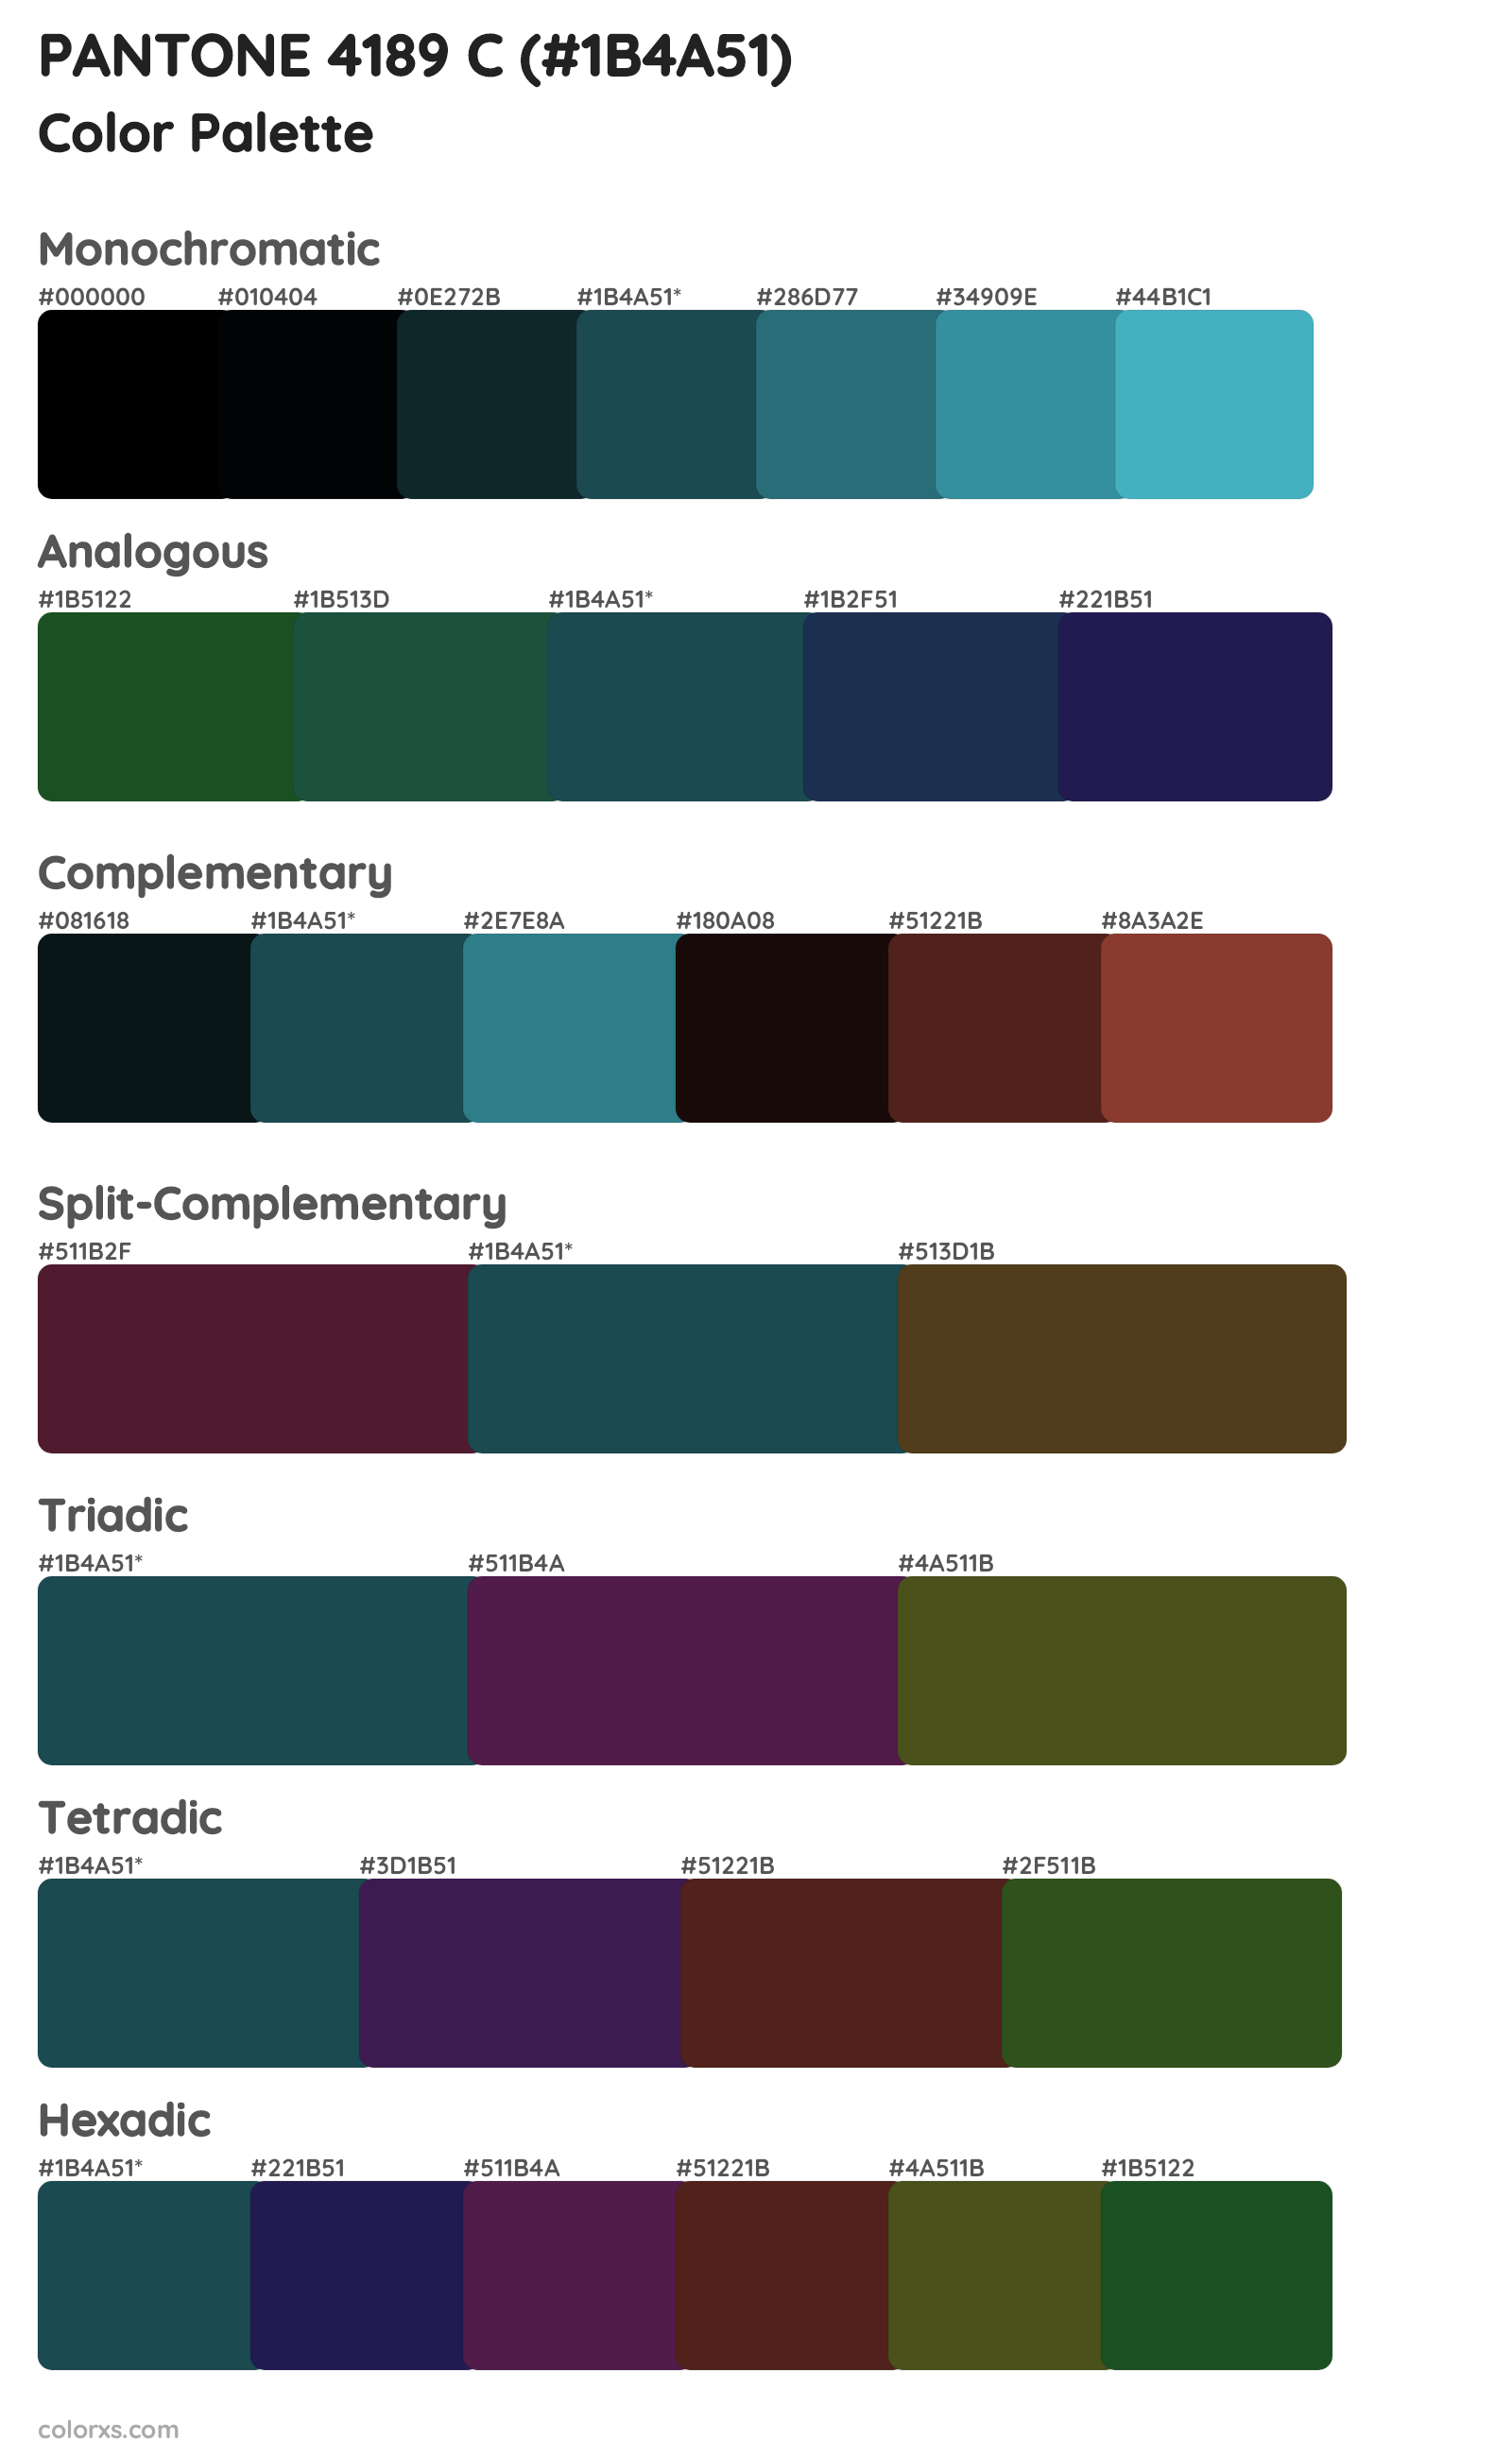 PANTONE 4189 C Color Scheme Palettes